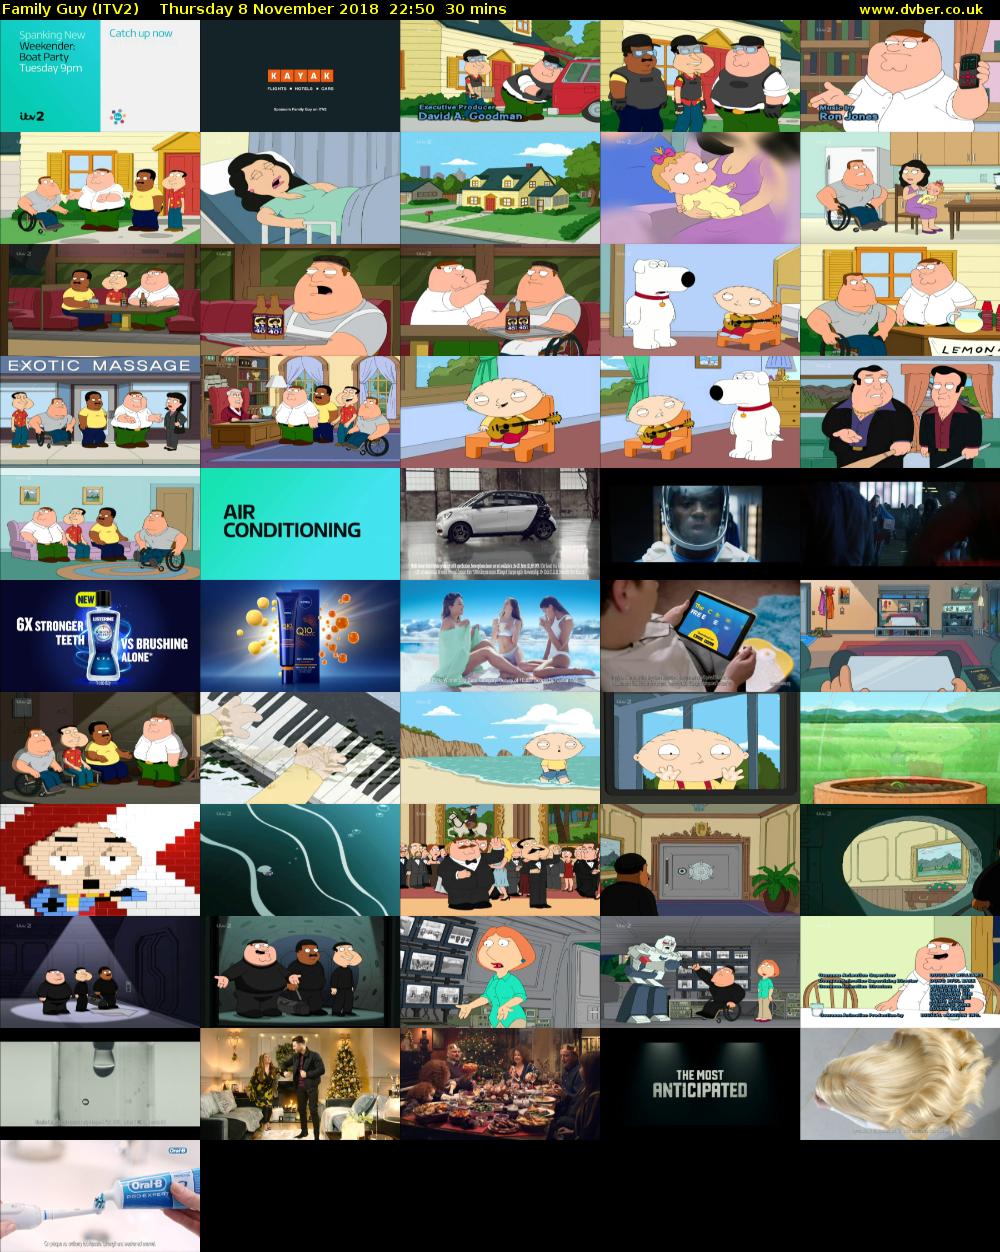 Family Guy (ITV2) Thursday 8 November 2018 22:50 - 23:20